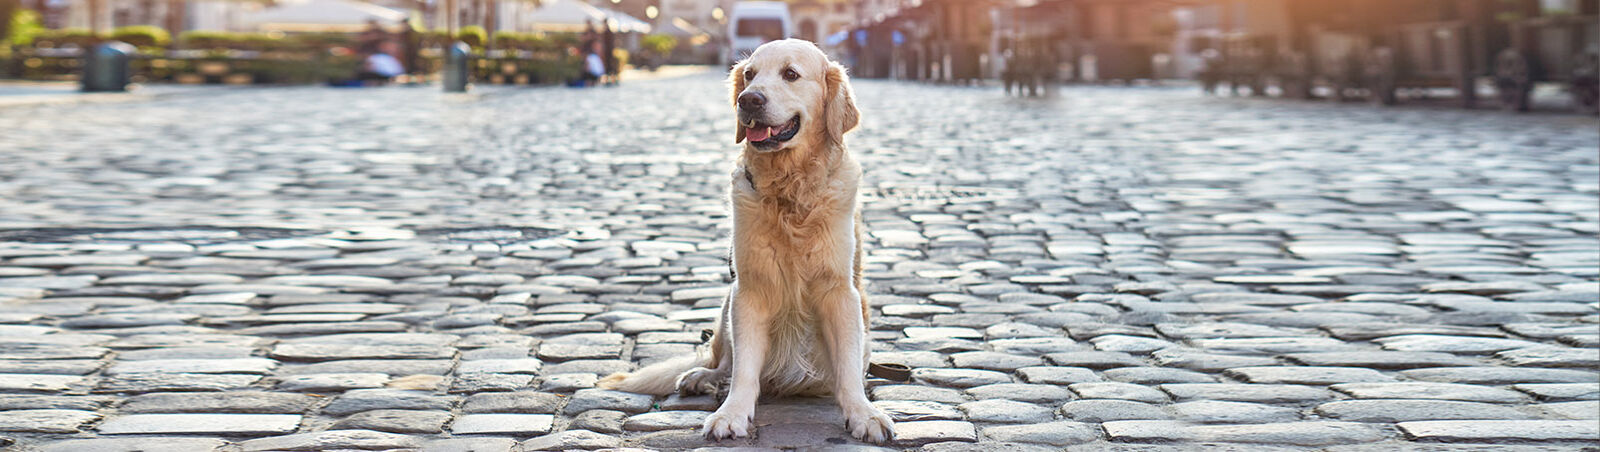 Ein Hund sitzt auf dem Kopfsteinpflaster einer Stadt, im Hintergrund Cafés und Geschäfte.